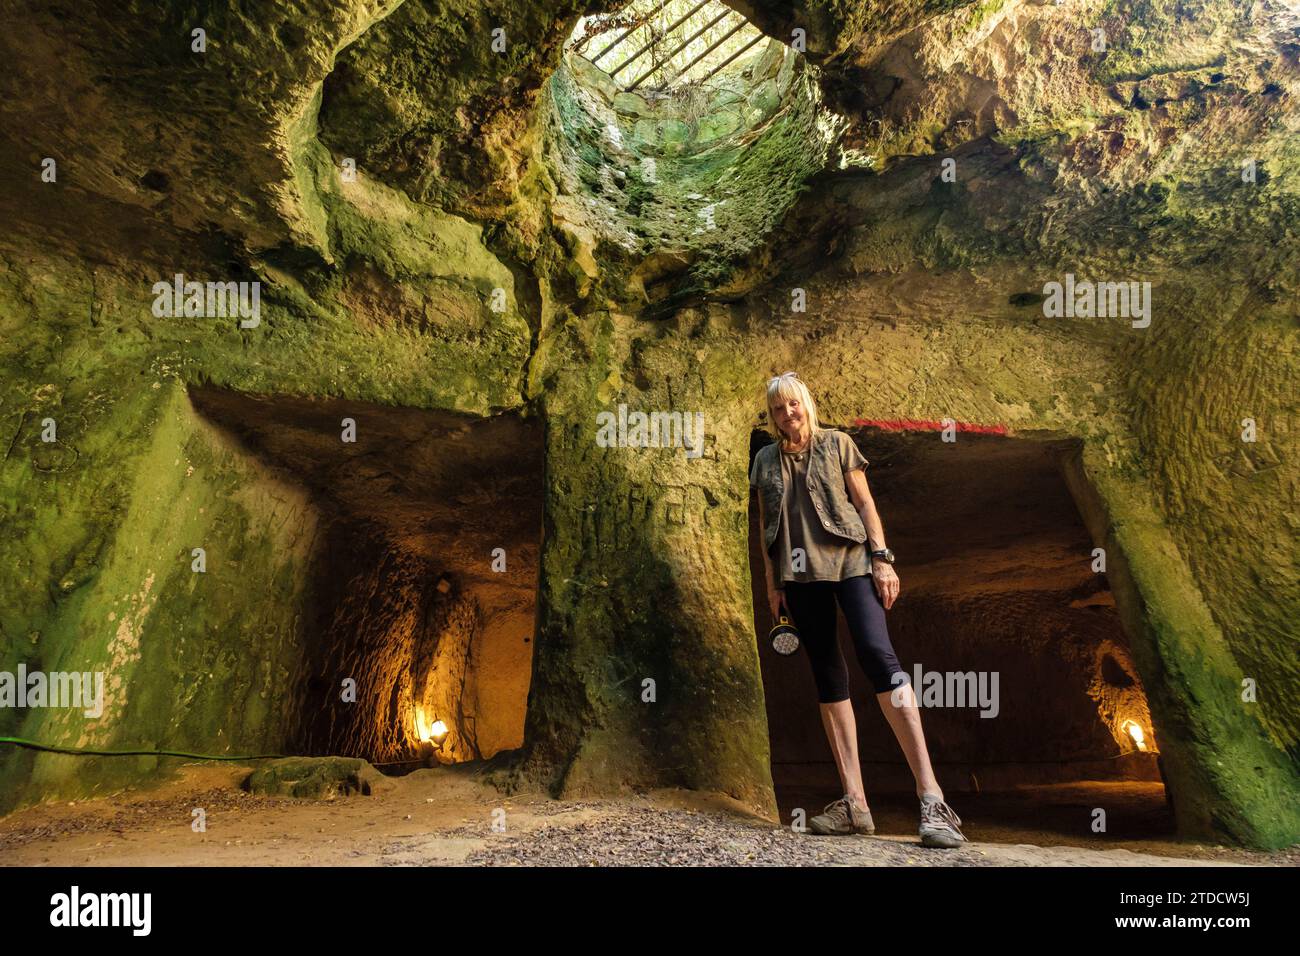 galeria subterranea, castillo de San Felipe, siglo XVI ,boca del puerto de Mahón,  municipio de Villacarlos, Menorca, balearic islands, Spain Stock Photo